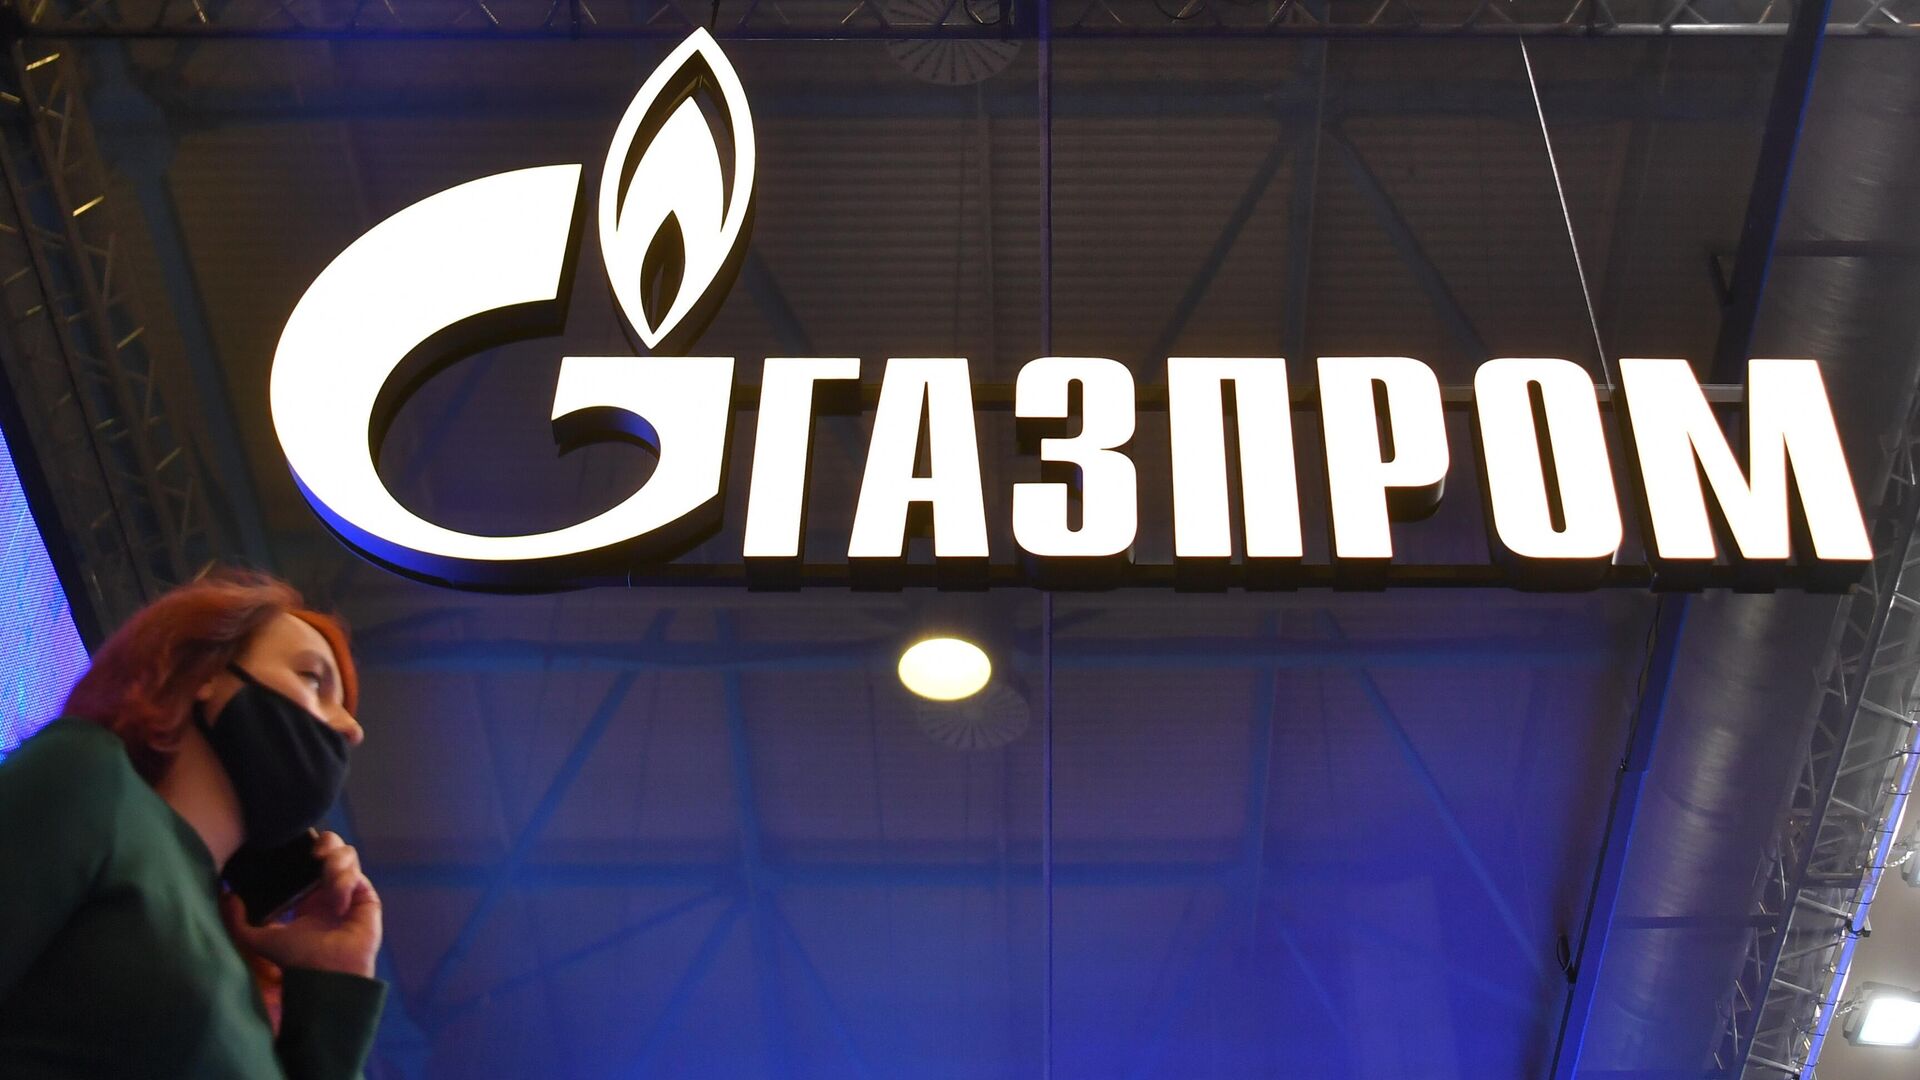 "Газпром" поставил на российский рынок максимум газа с 2013 года